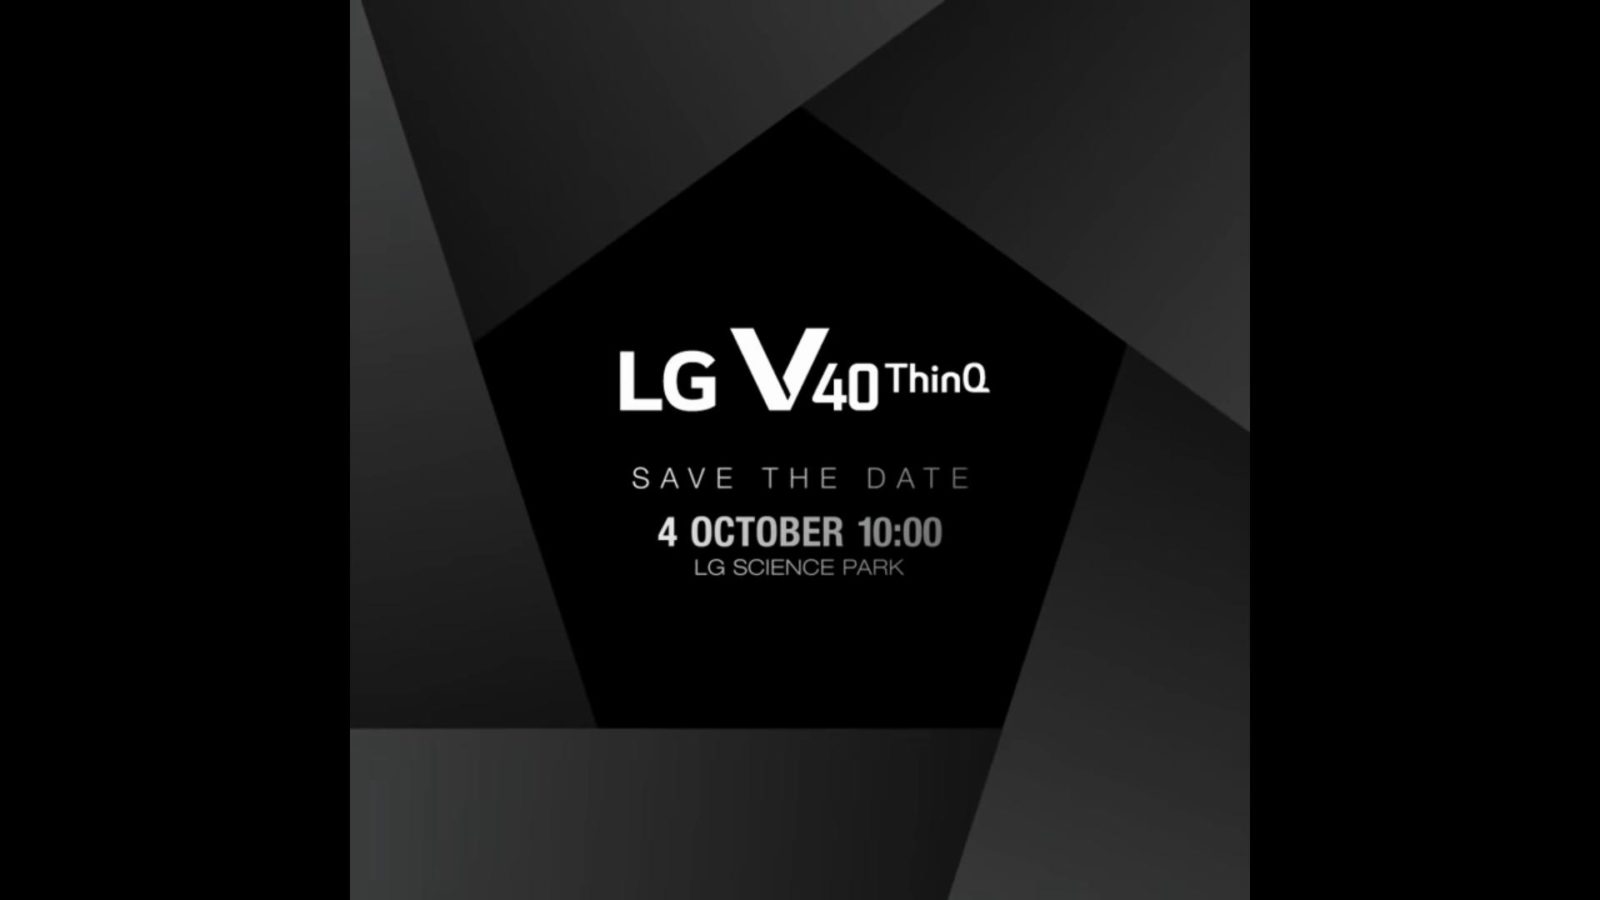 LG-V40-ThinQ